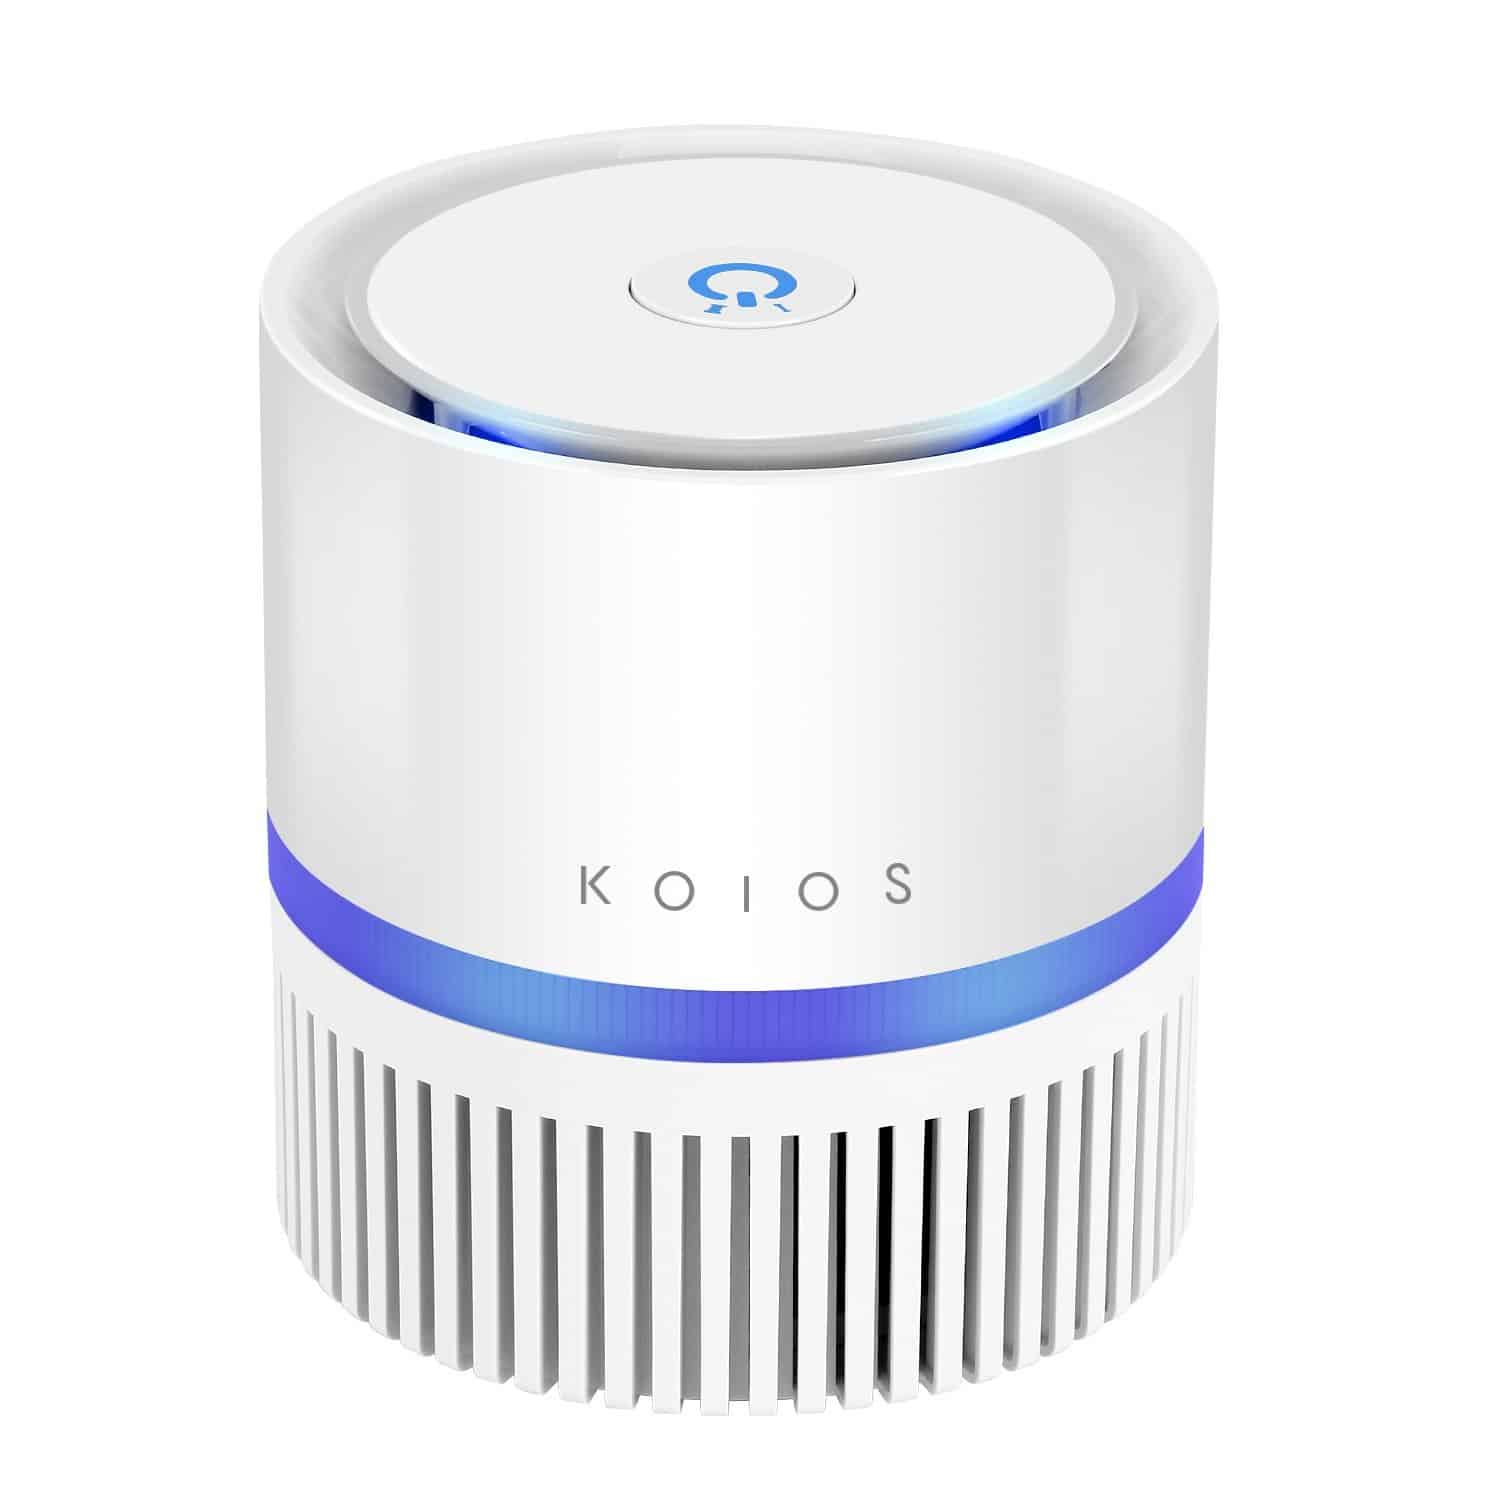 Koios Desktop Air Purifier Review - Best Air Purifier